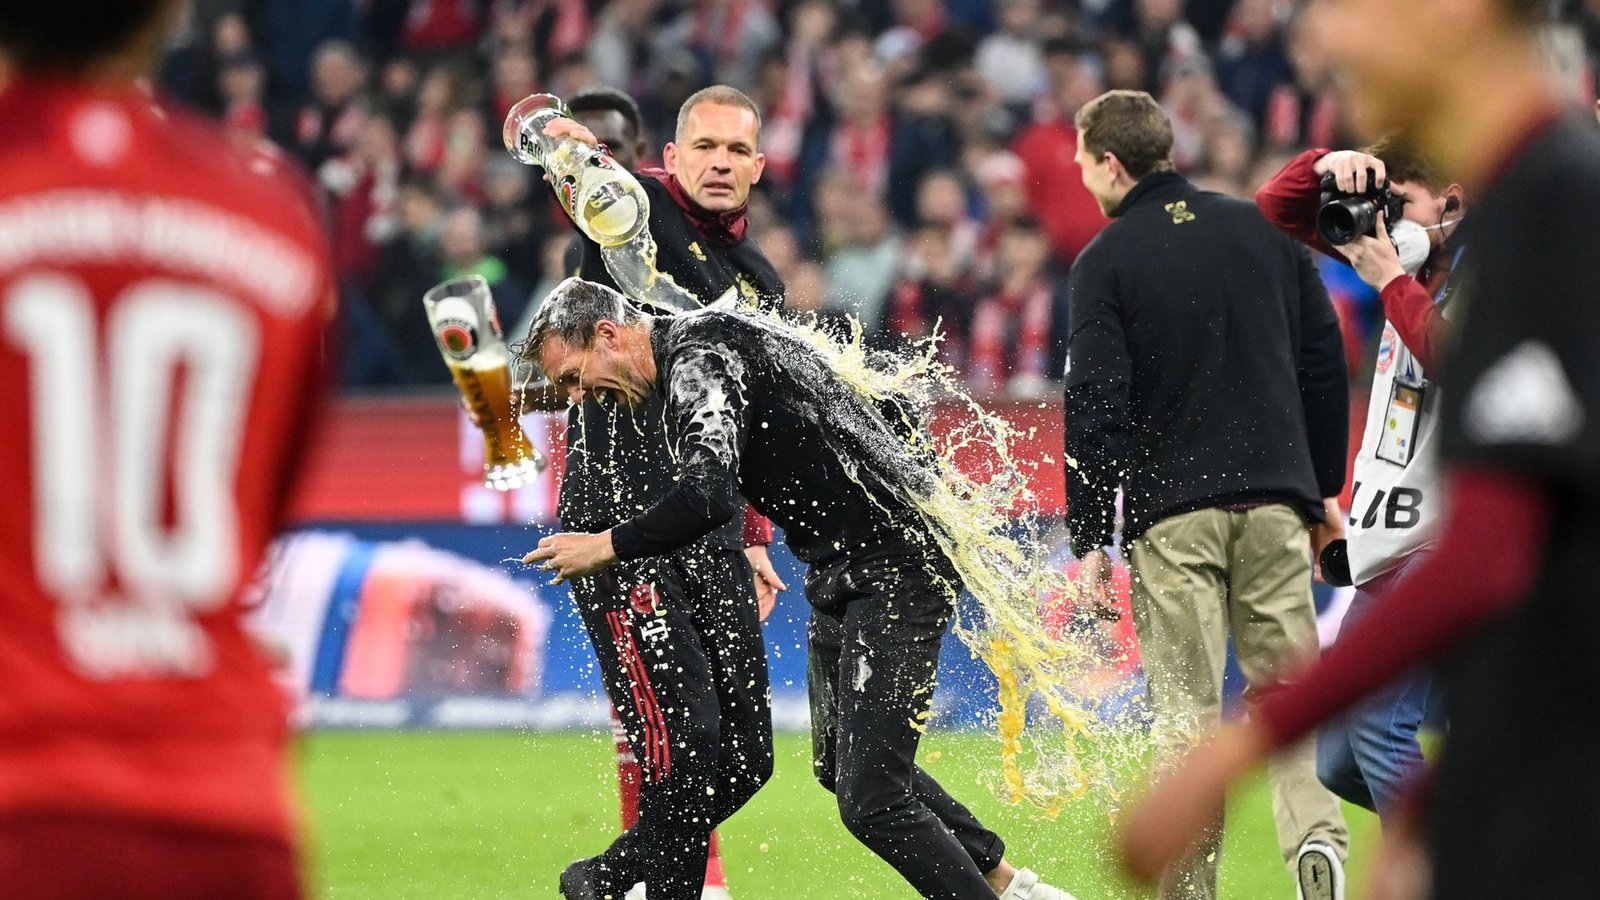 Bayern-Trainer Nagelsmann konnte sich nach dem Sieg gegen Dortmund der Bierdusche nicht entziehen.Foto: Matthias Balk/dpa